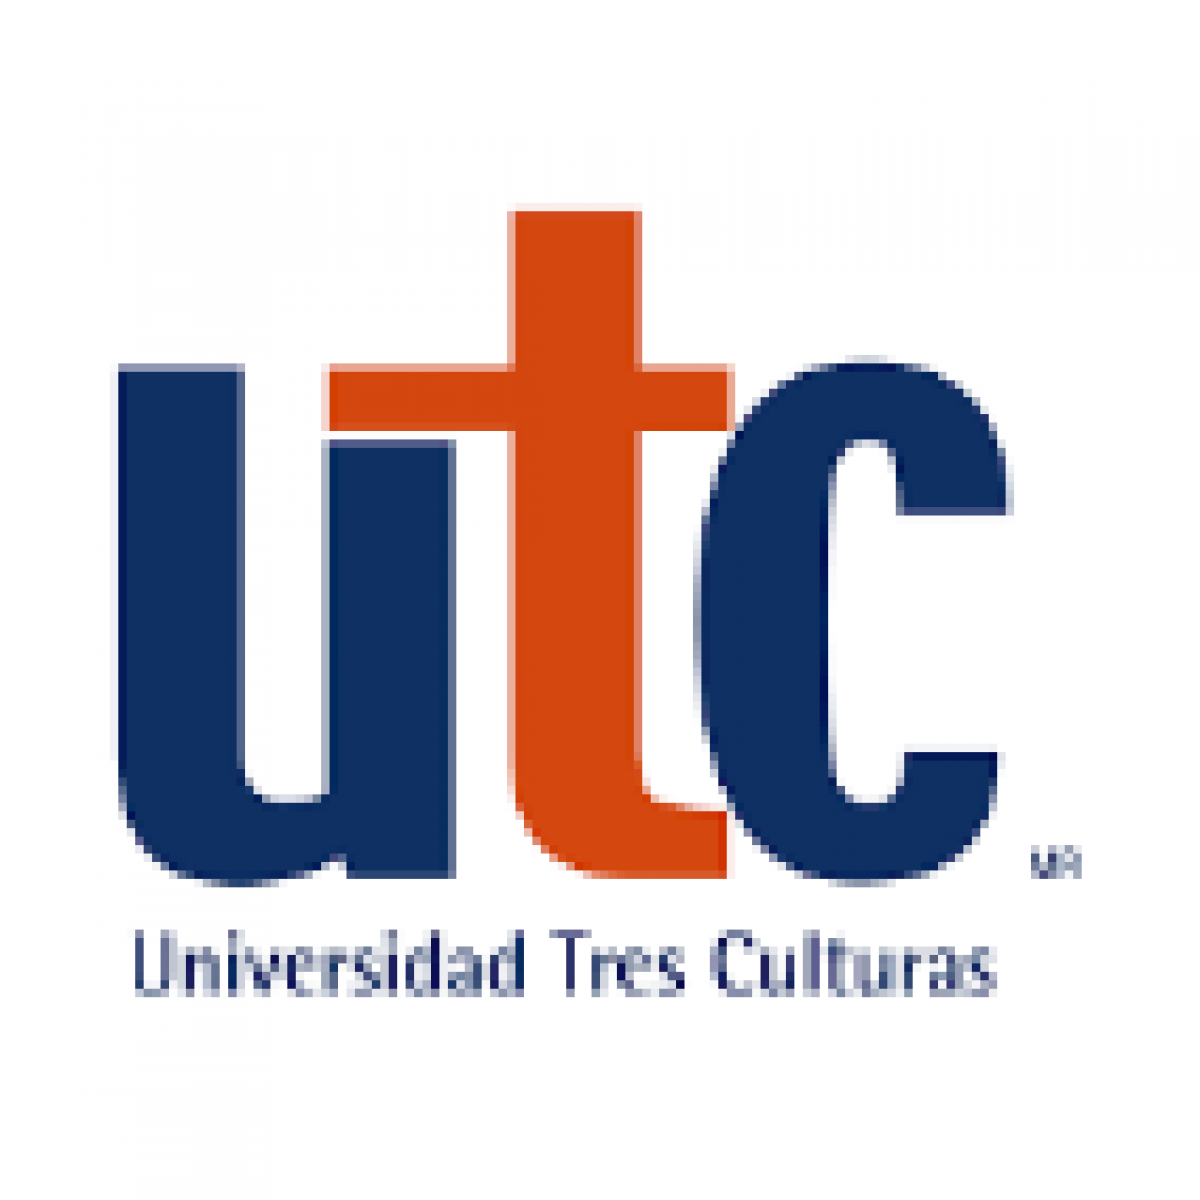 ¿Qué universidad es la UTC